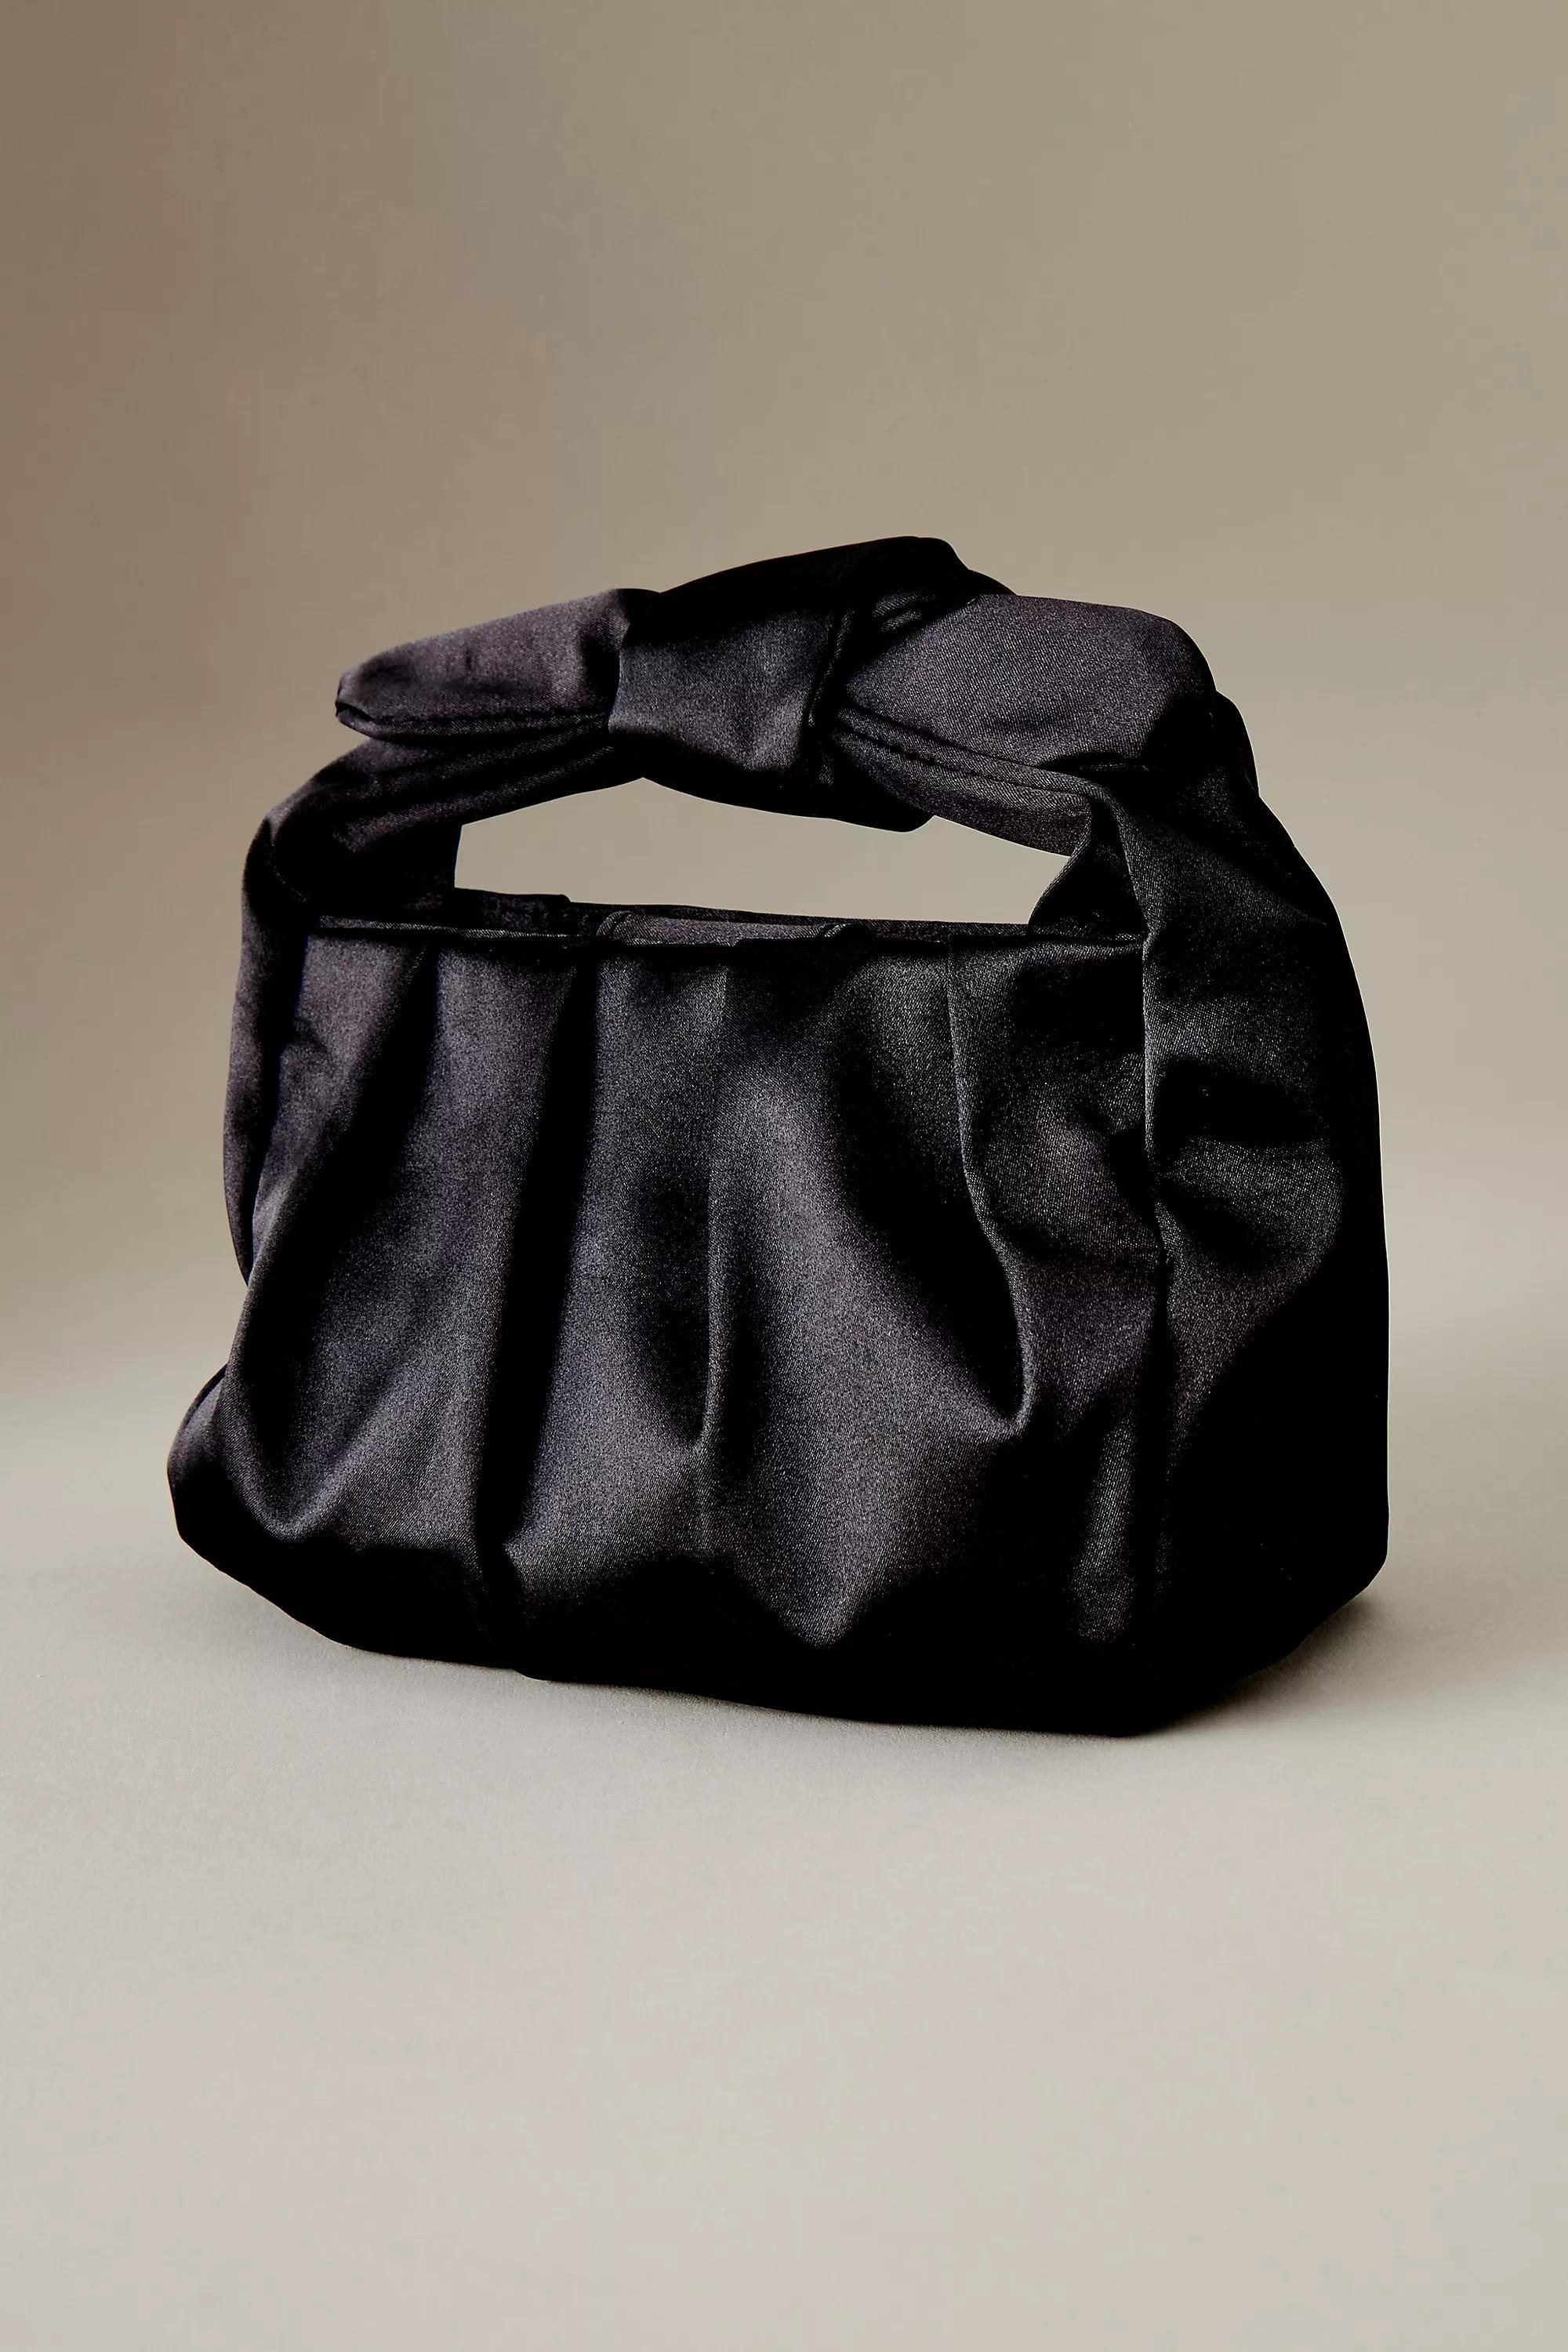 Anthropologie - Satin Bow-Strap Shoulder Bag, Black